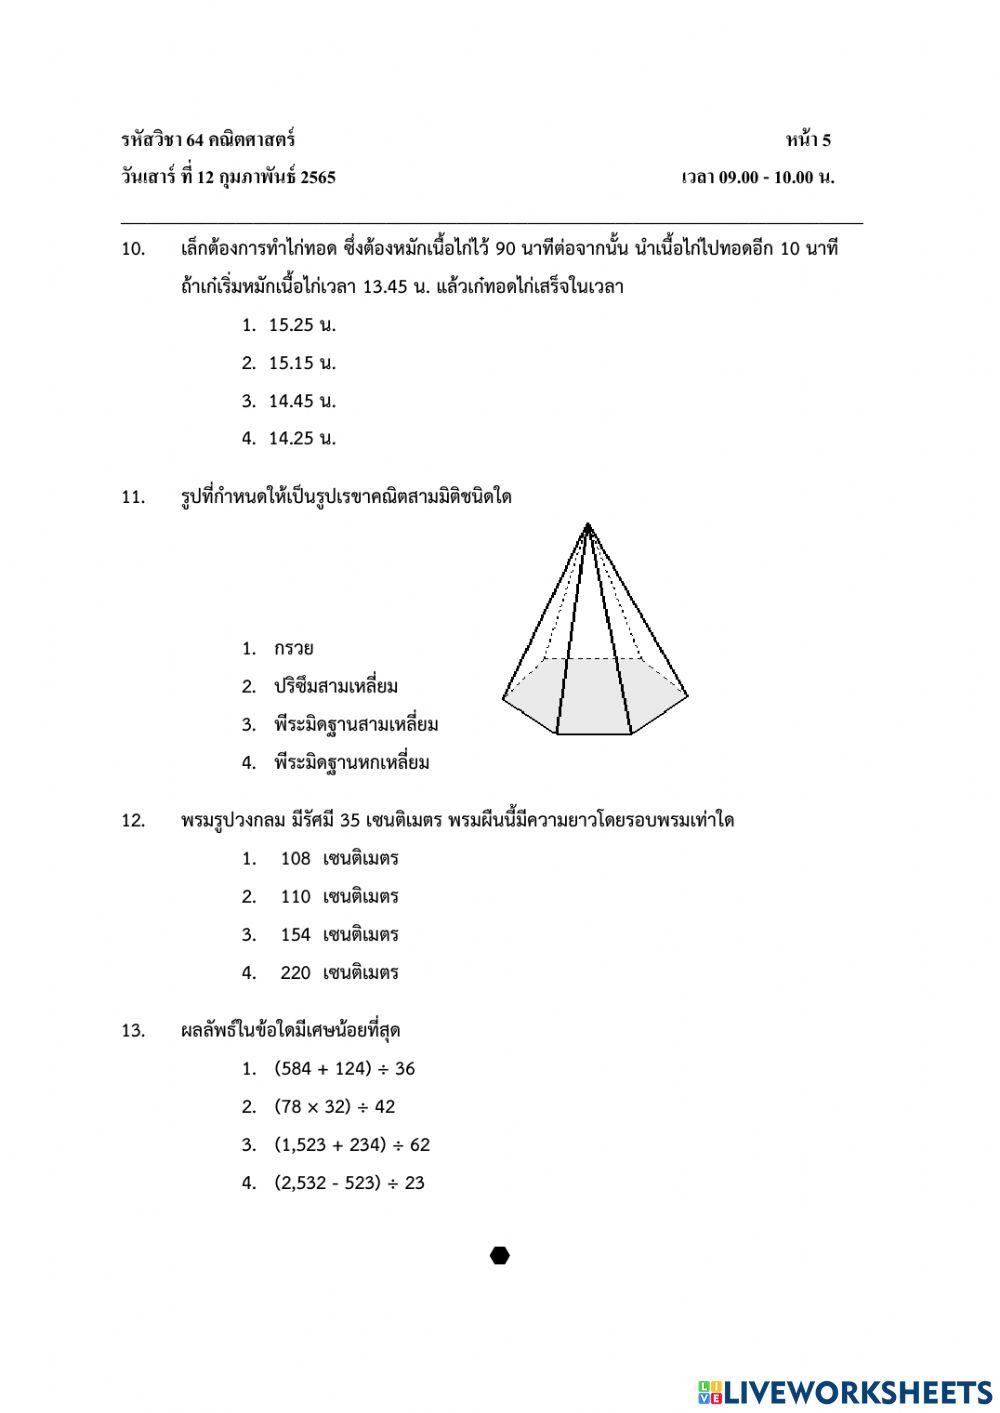 แบบทดสอบ Pre O-NET วิชาคณิตศาสตร์ ป.6 ปีการศึกษา 2564